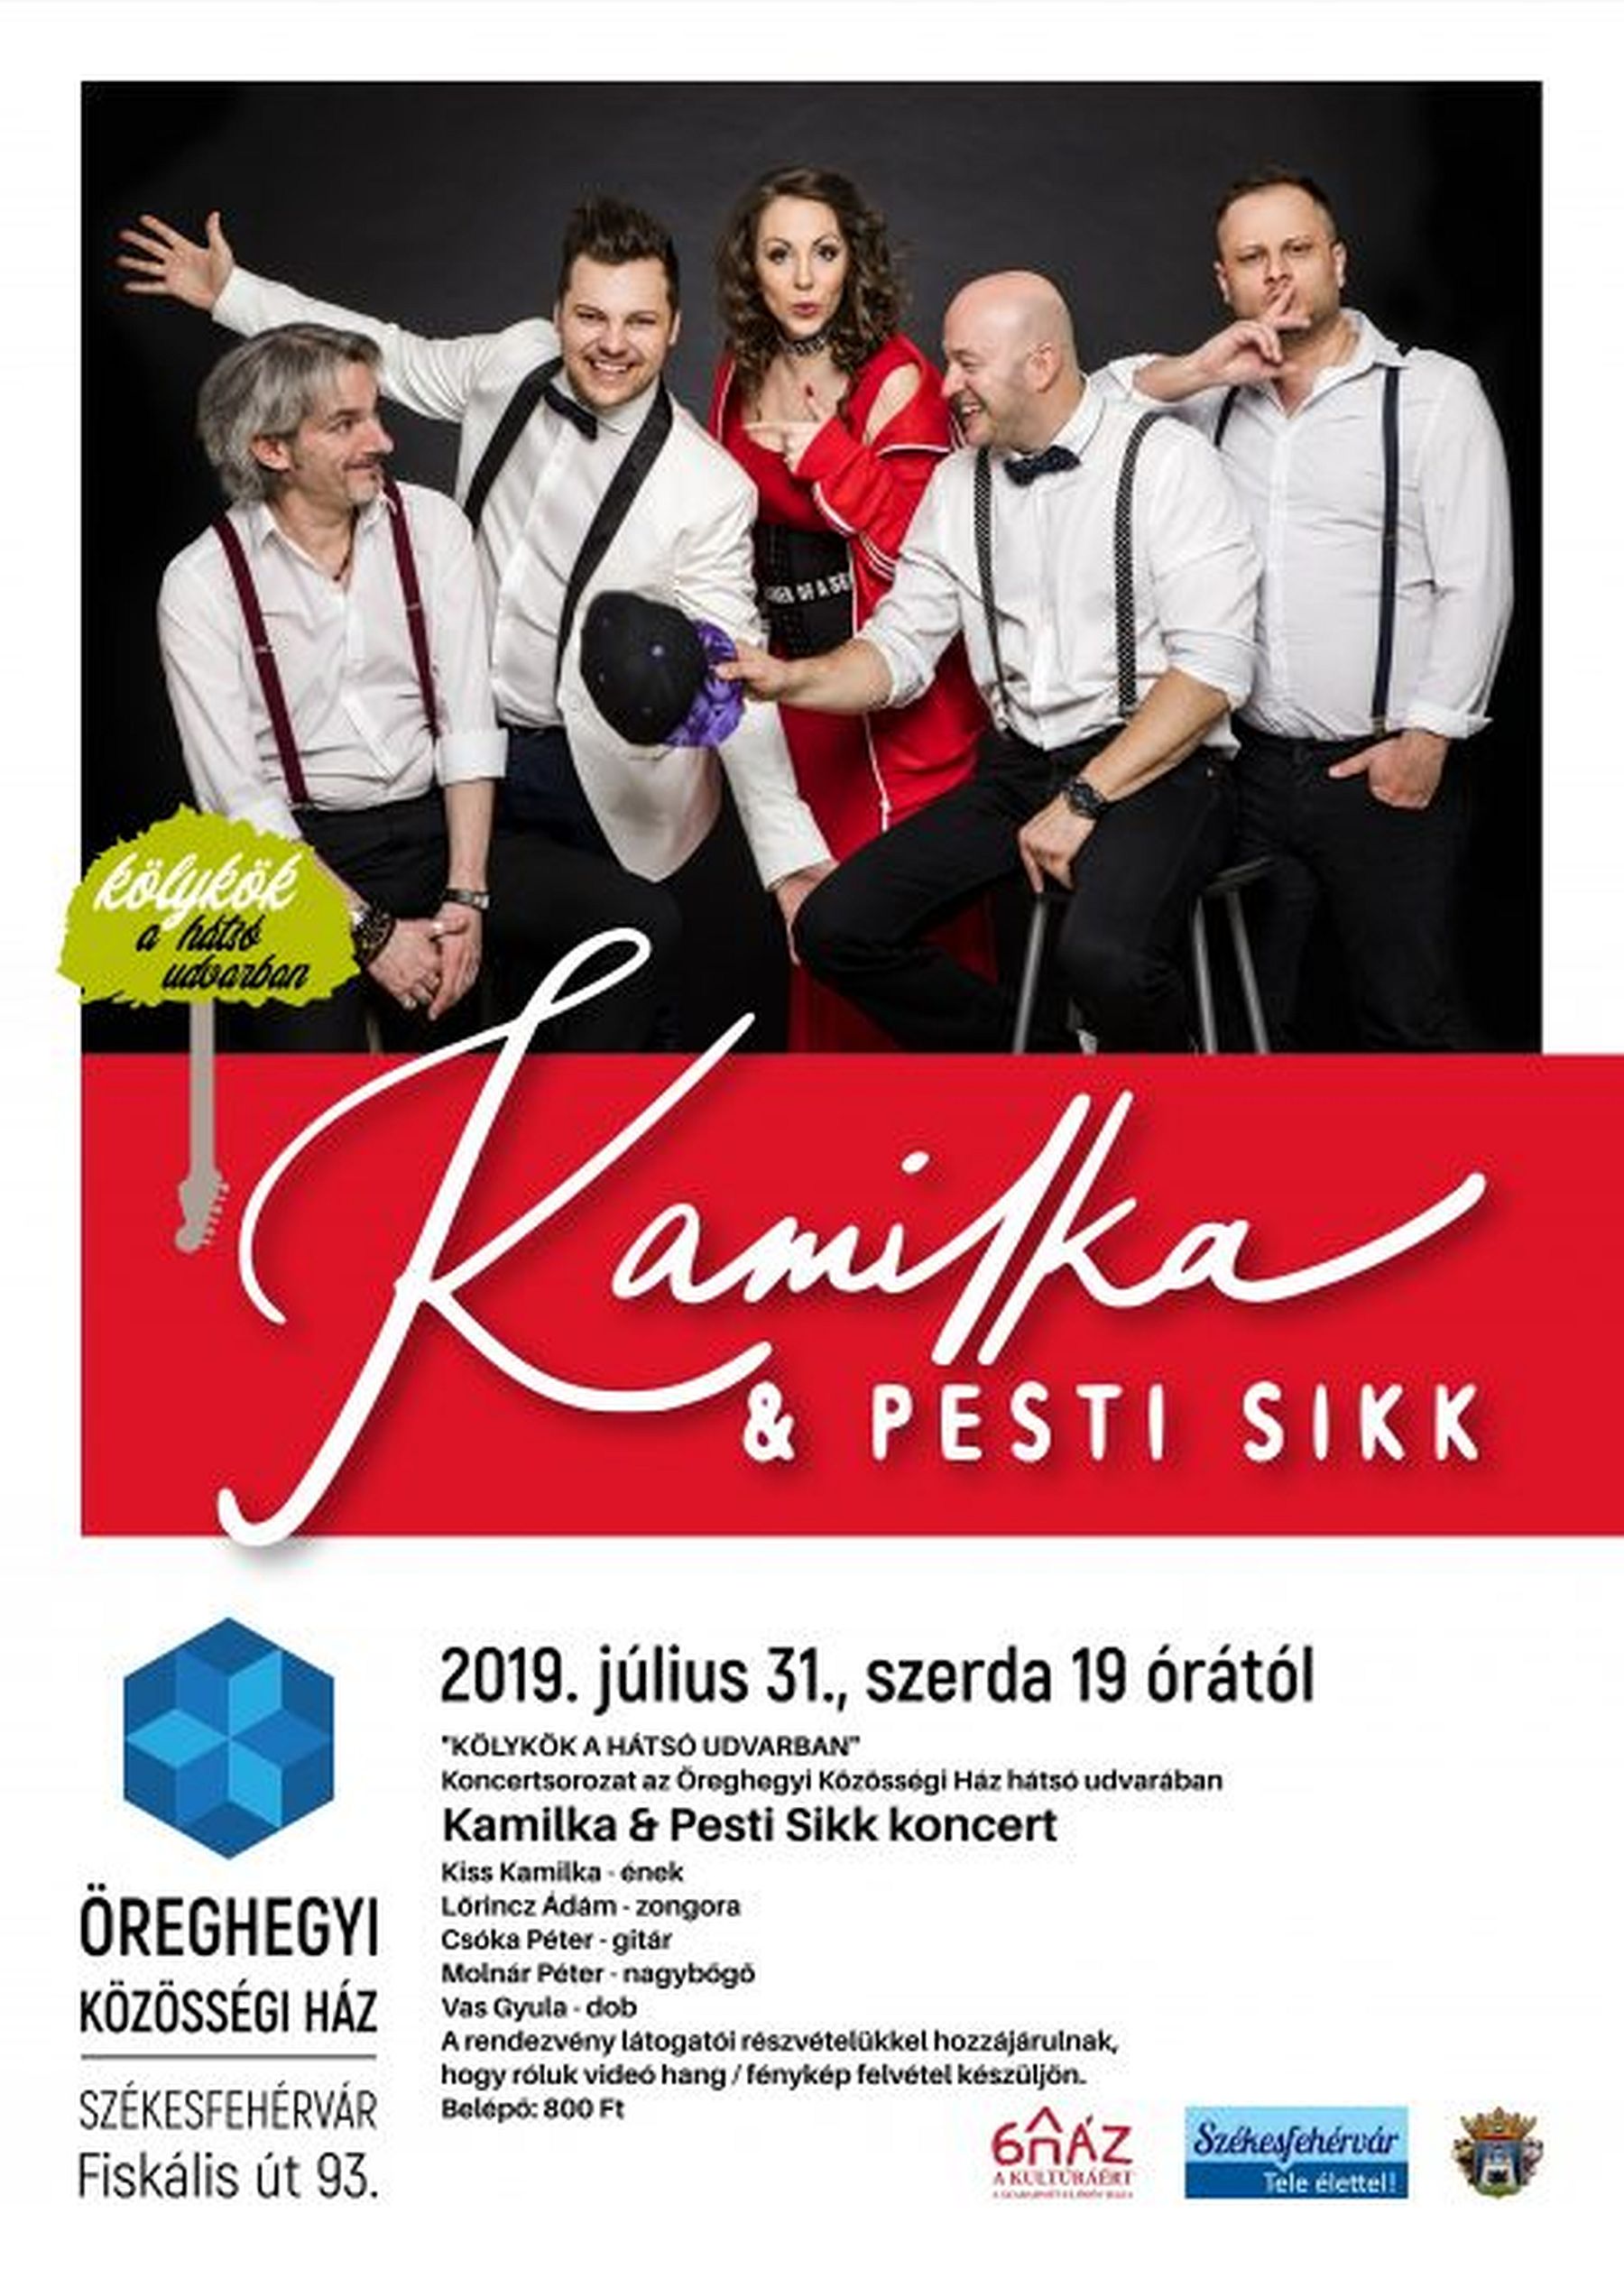 Nyáresti koncertek Öreghegyen - a Kamilka és Pesti Sikk lép fel szerdán